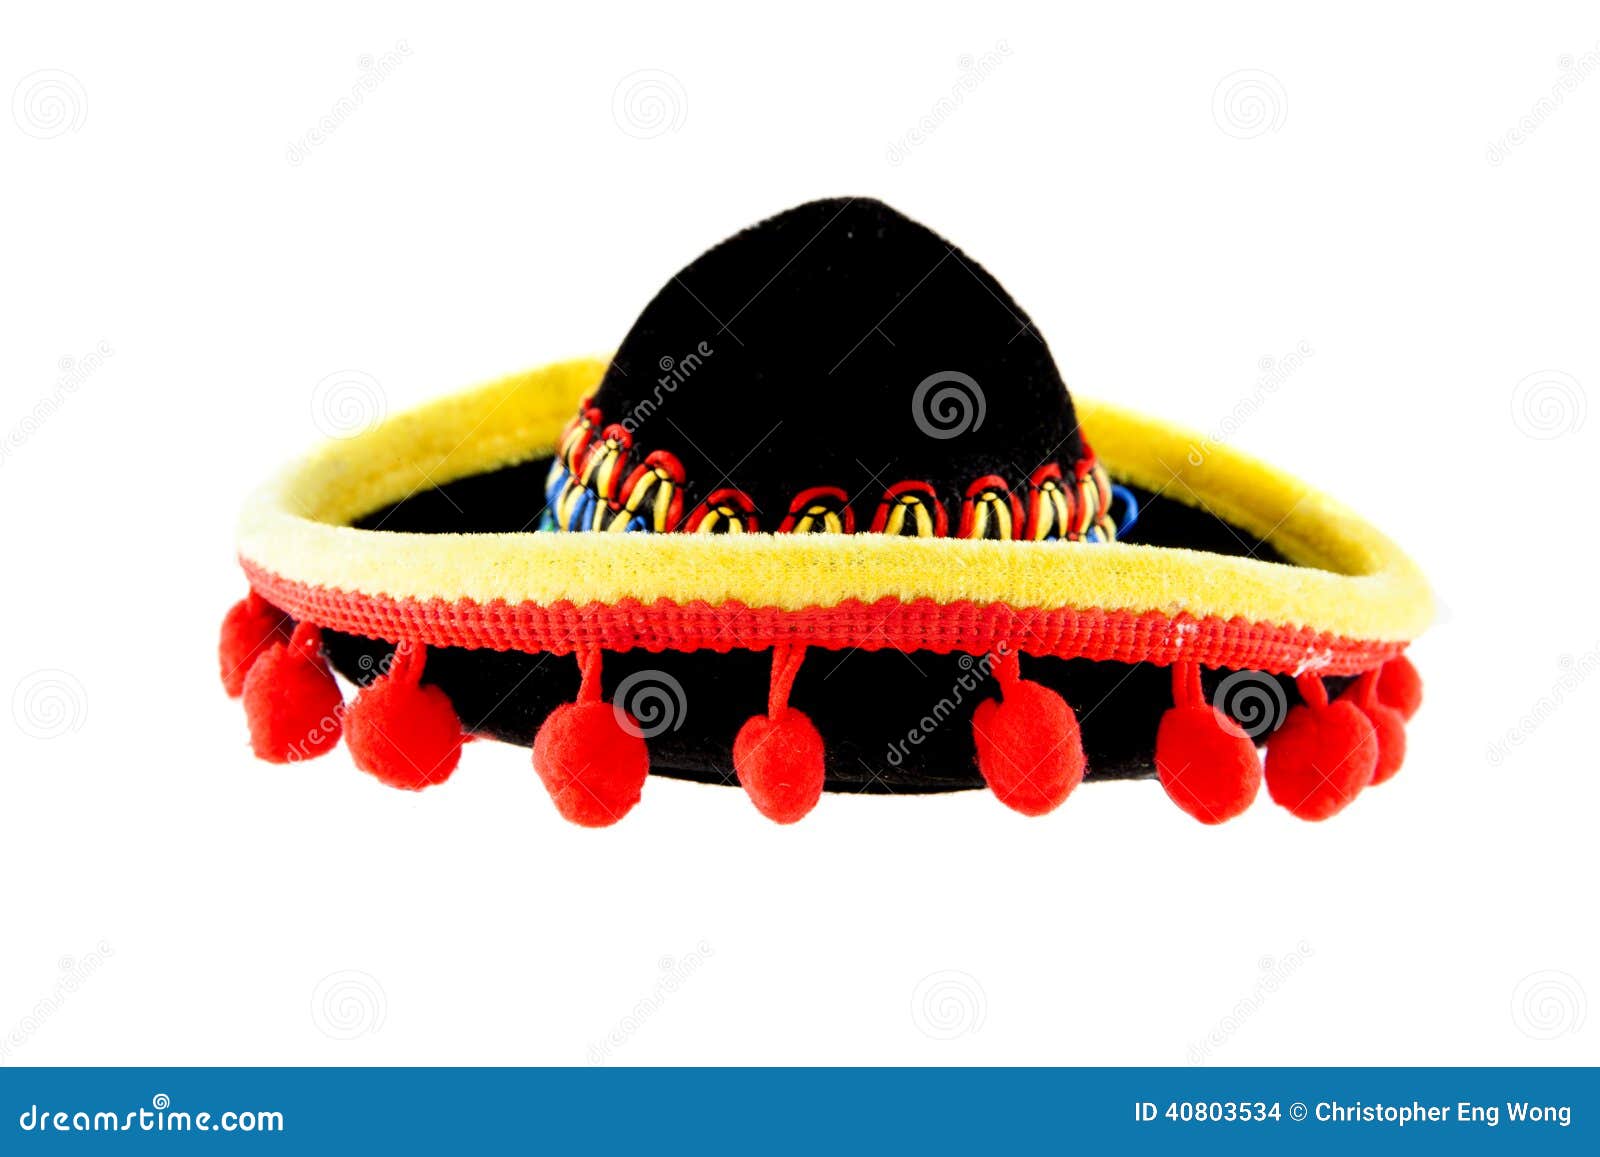 墨西哥帽 库存照片. 图片 包括有 文化, 闪烁, 发光, 唯一, 拉丁语, 狂欢节, 墨西哥, 模式, 节假日 - 30758928